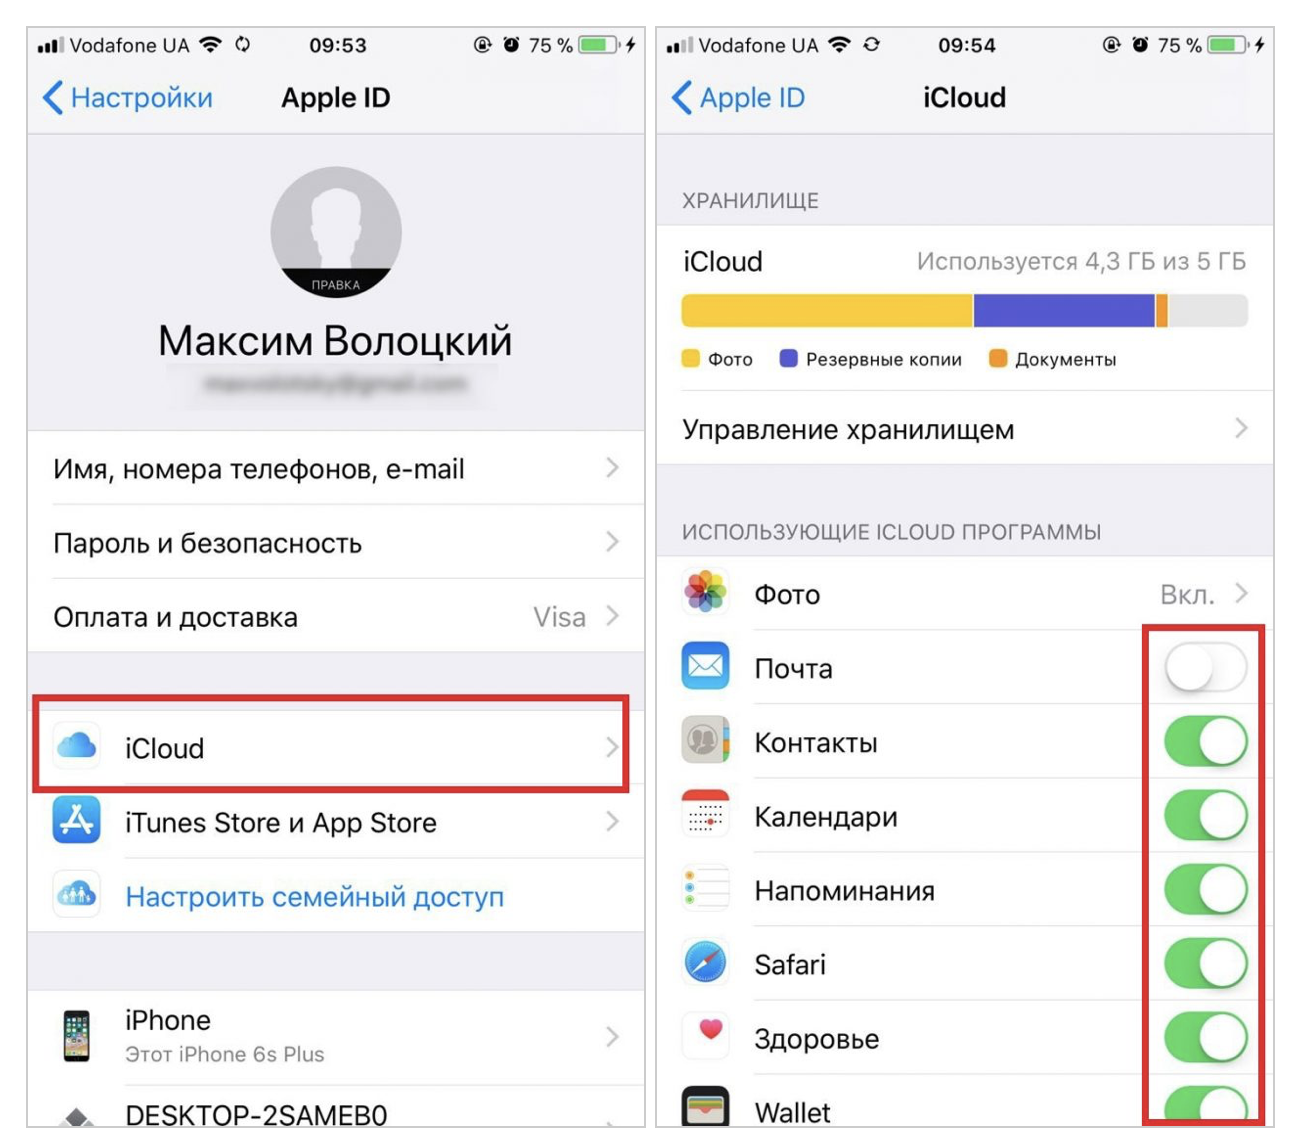 Как сбросить icloud на iphone 5s, 4s, 6: без пароля и логина